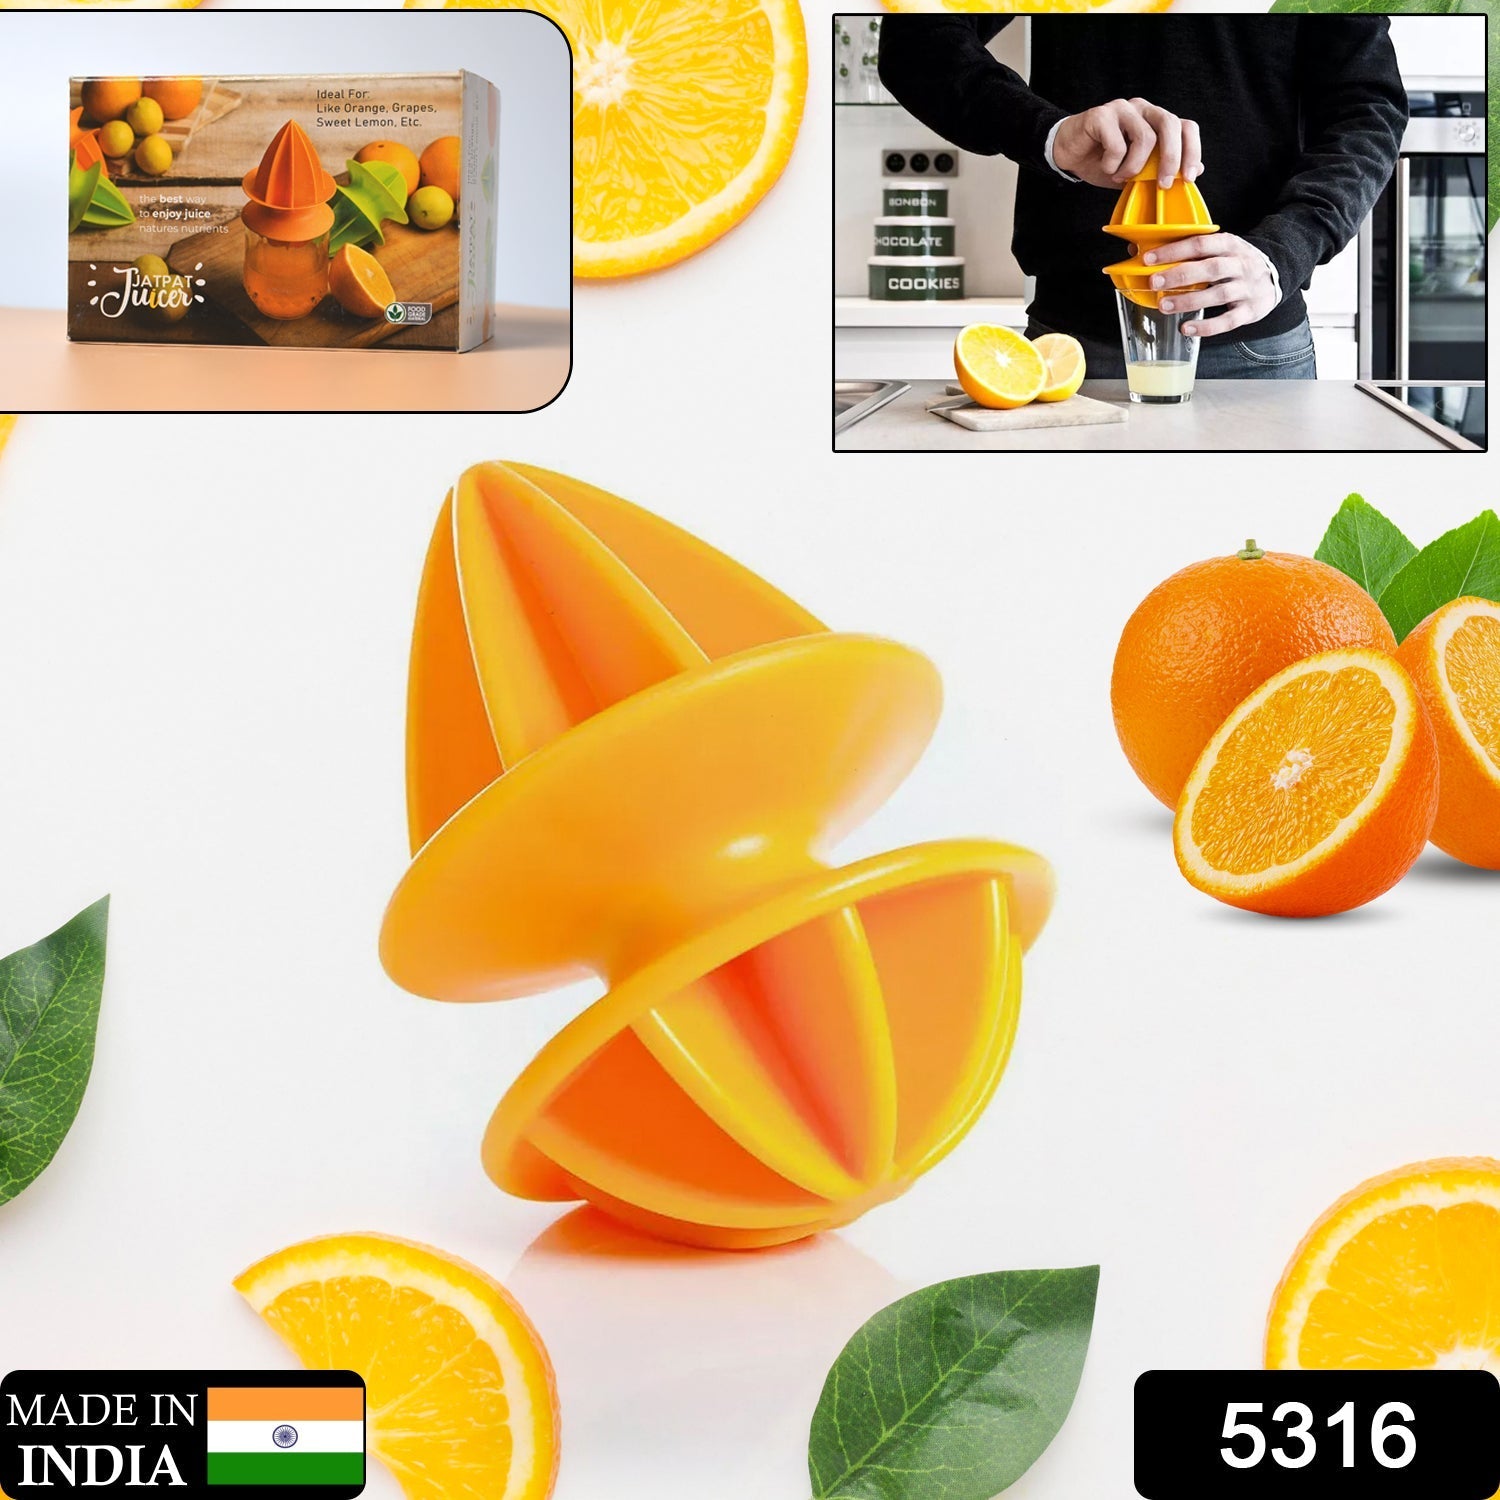 5316 JatPat Juicer Citrus Hand Juicer Plastic High Quality Juicer For Home & Multi Use Juicer 